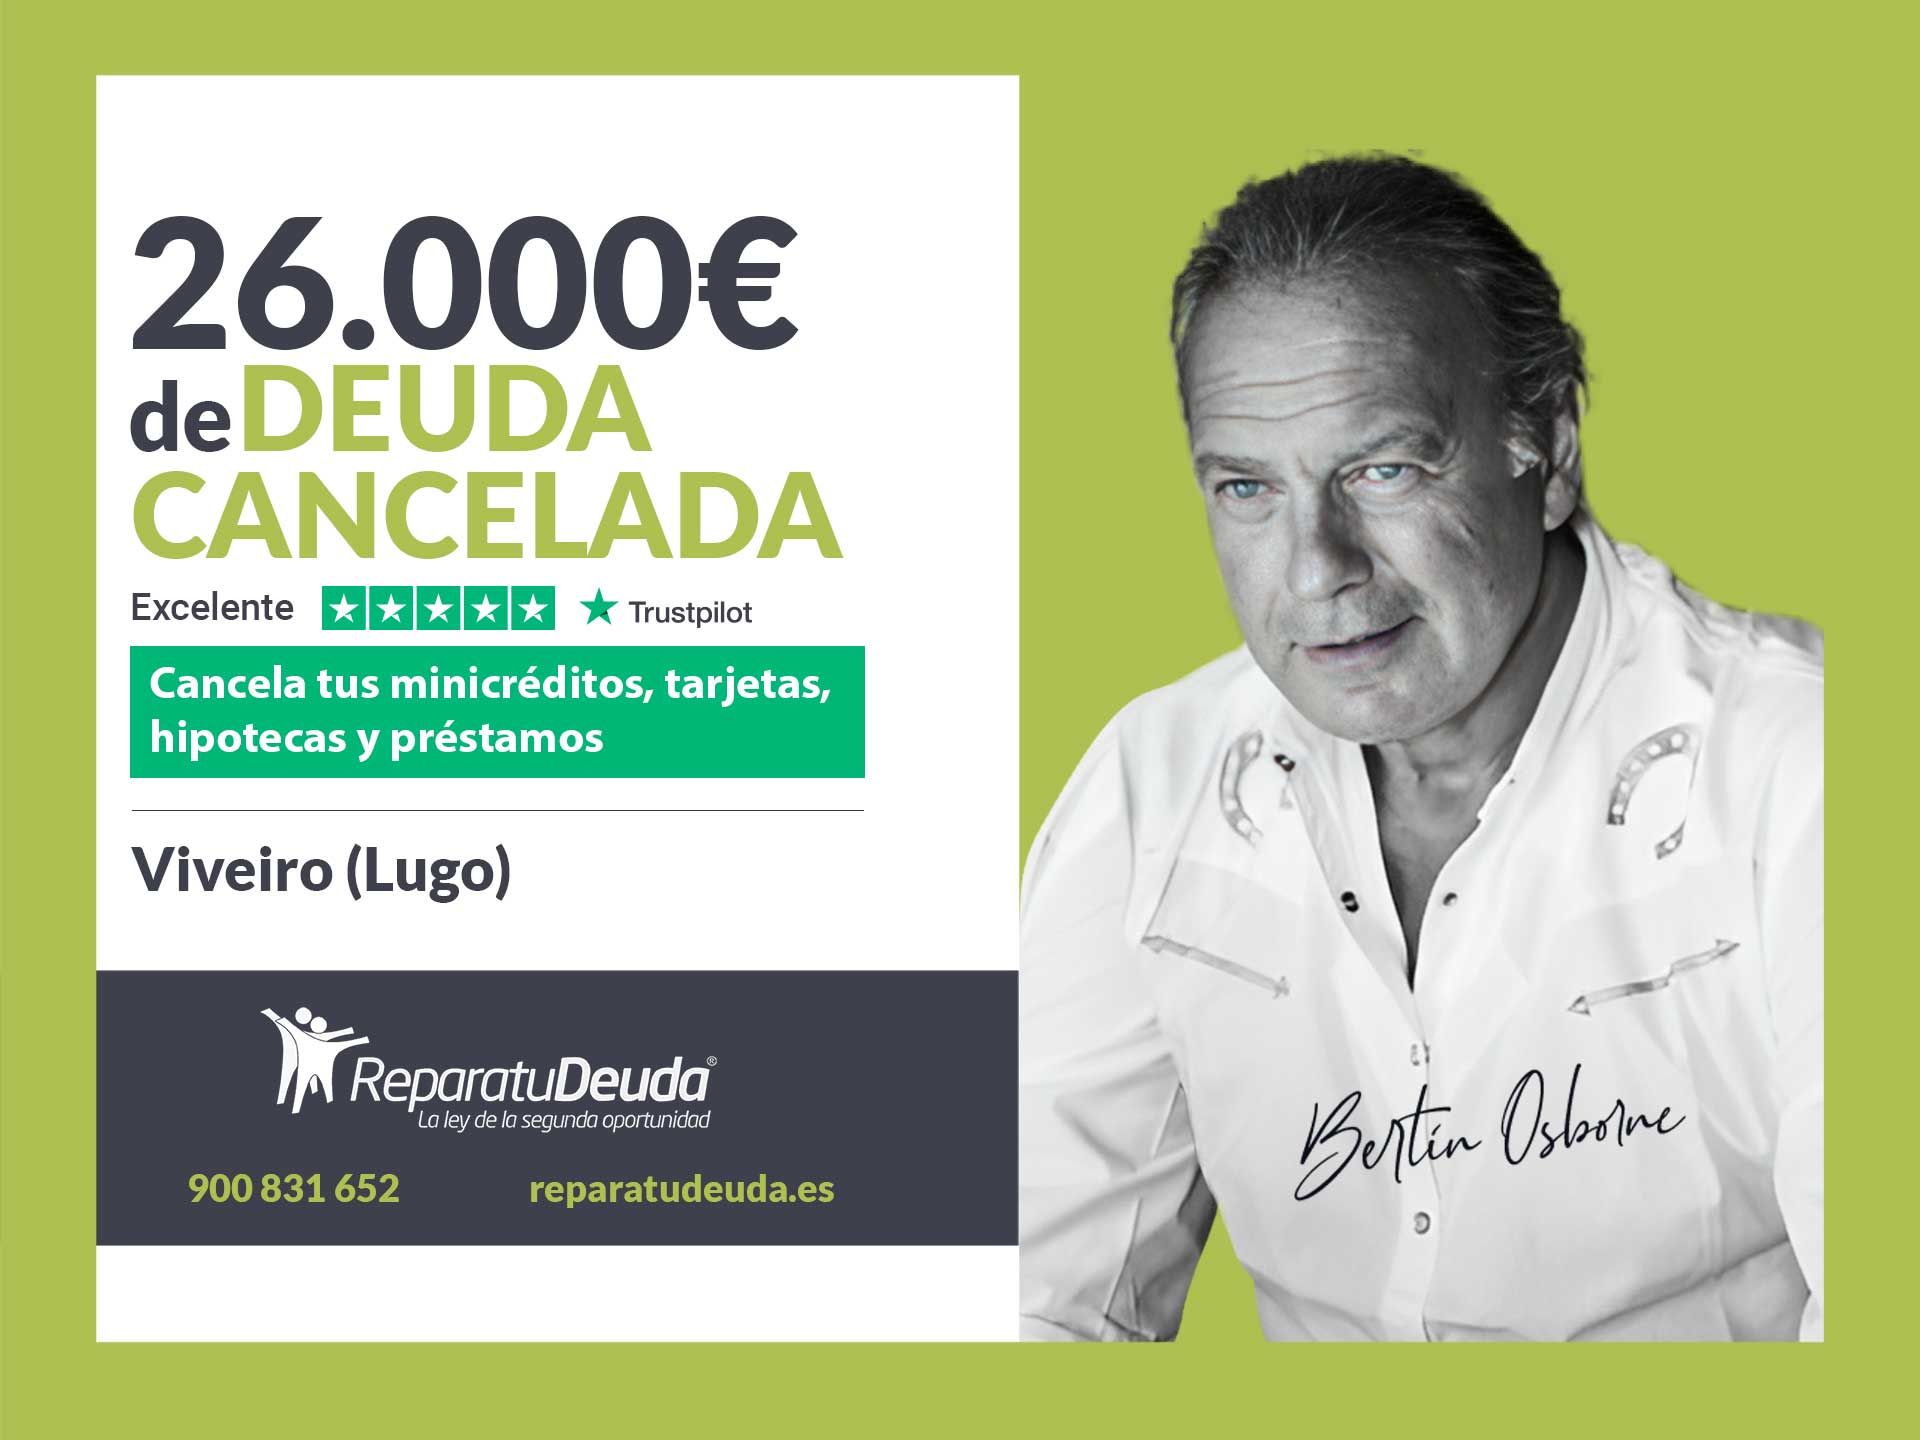 Repara tu Deuda Abogados cancela 26.000? en Viveiro (Lugo) con la Ley de la Segunda Oportunidad